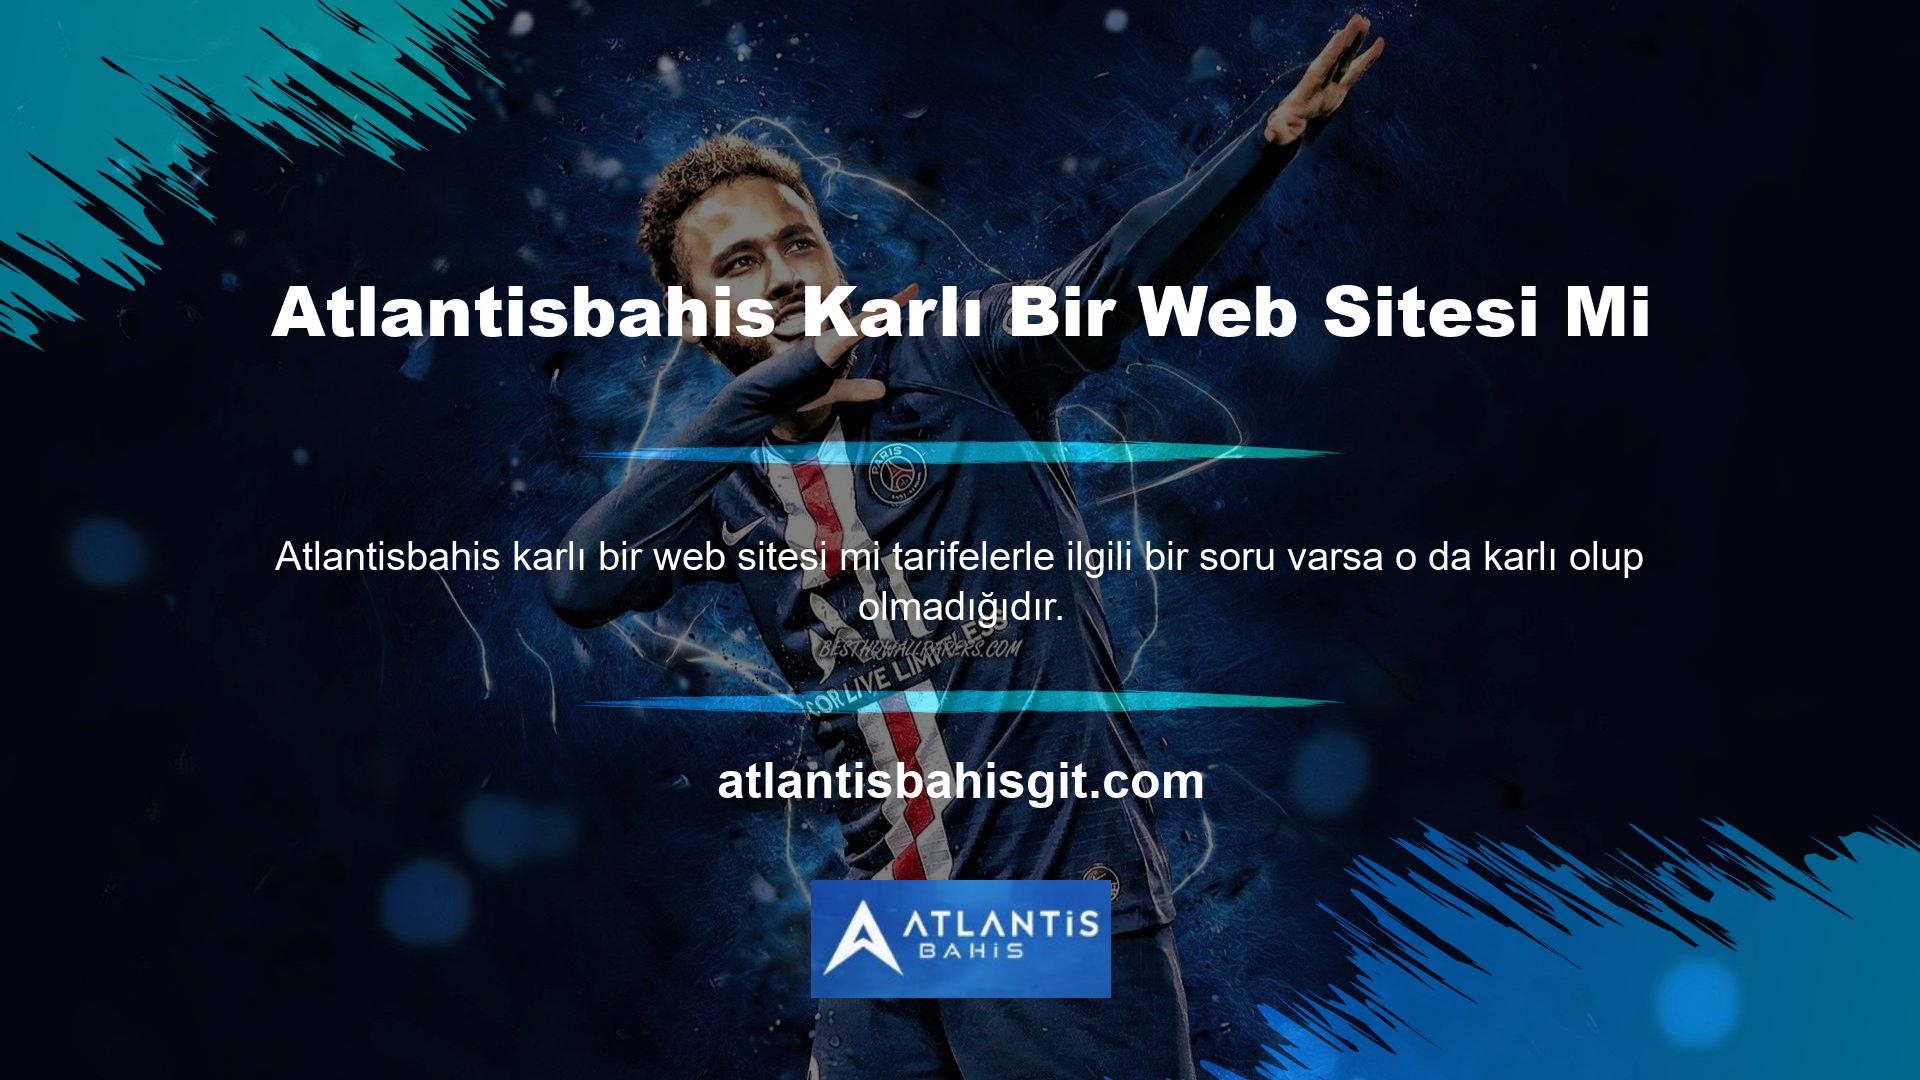 Atlantisbahis online bahis sitesi spor bahisleri ve casino oyunlarında en iyi oranları sunmaktadır